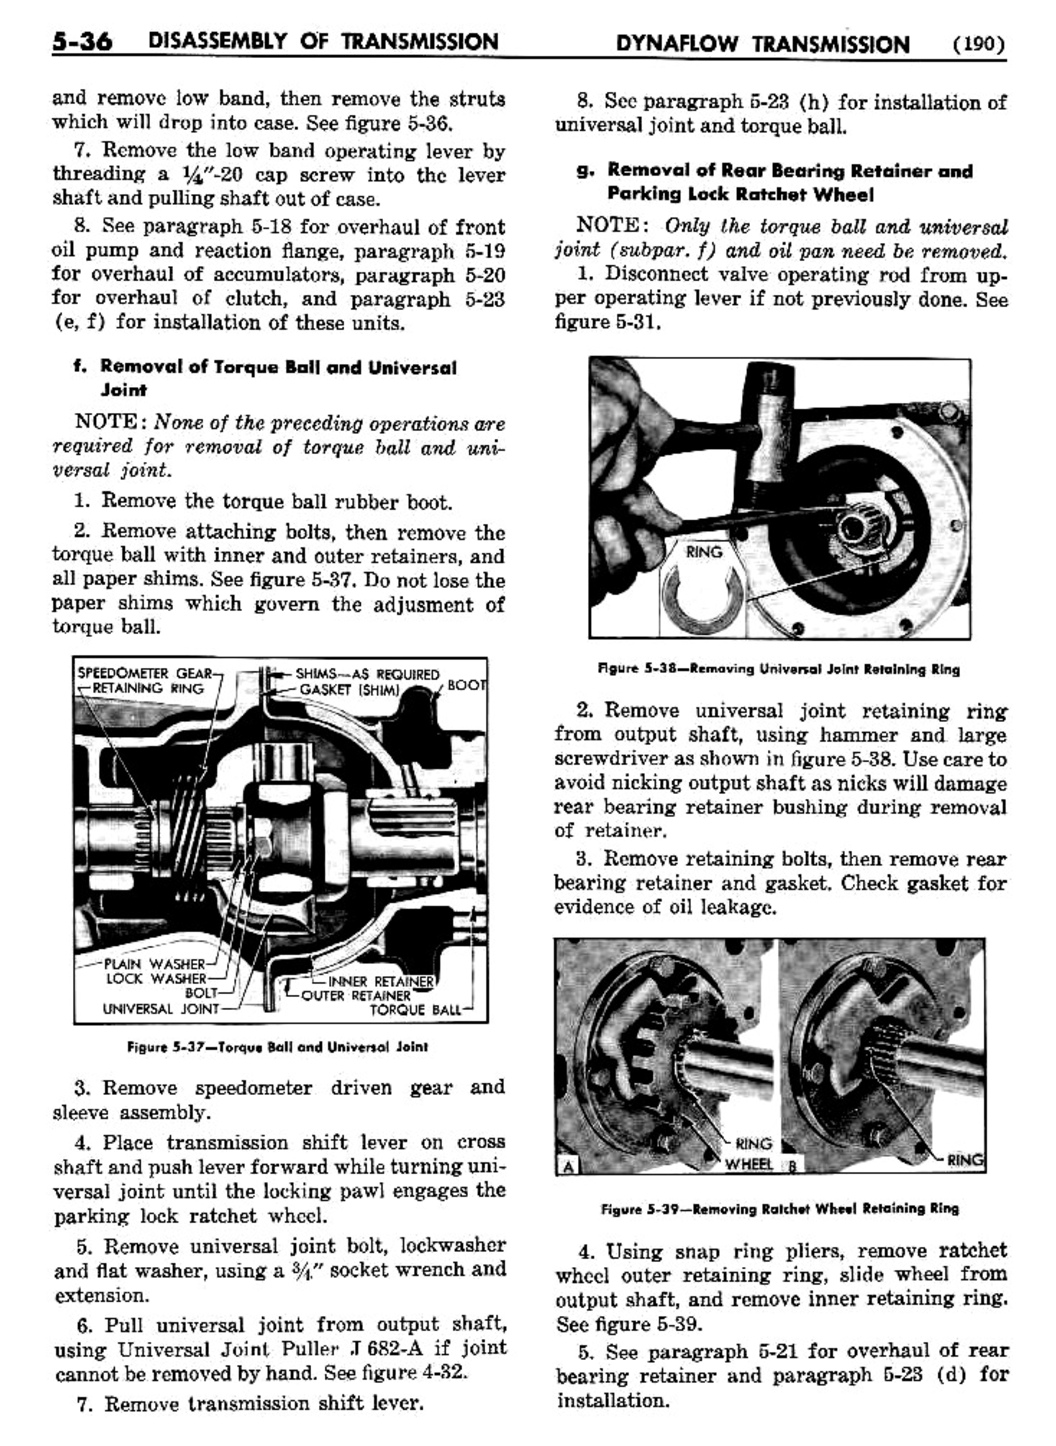 n_06 1954 Buick Shop Manual - Dynaflow-036-036.jpg